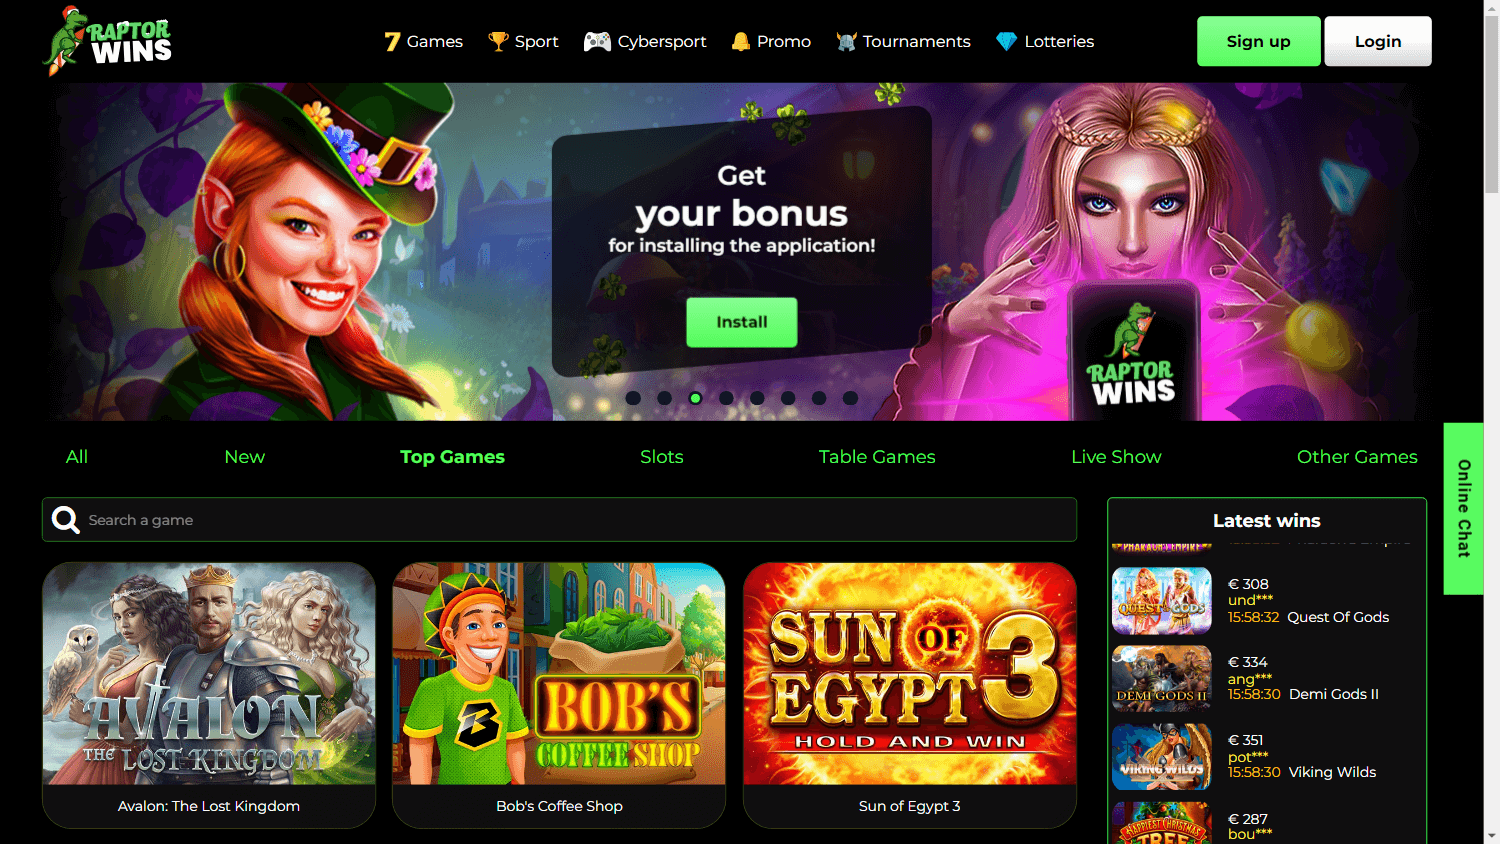 raptor_wins_casino_homepage_desktop